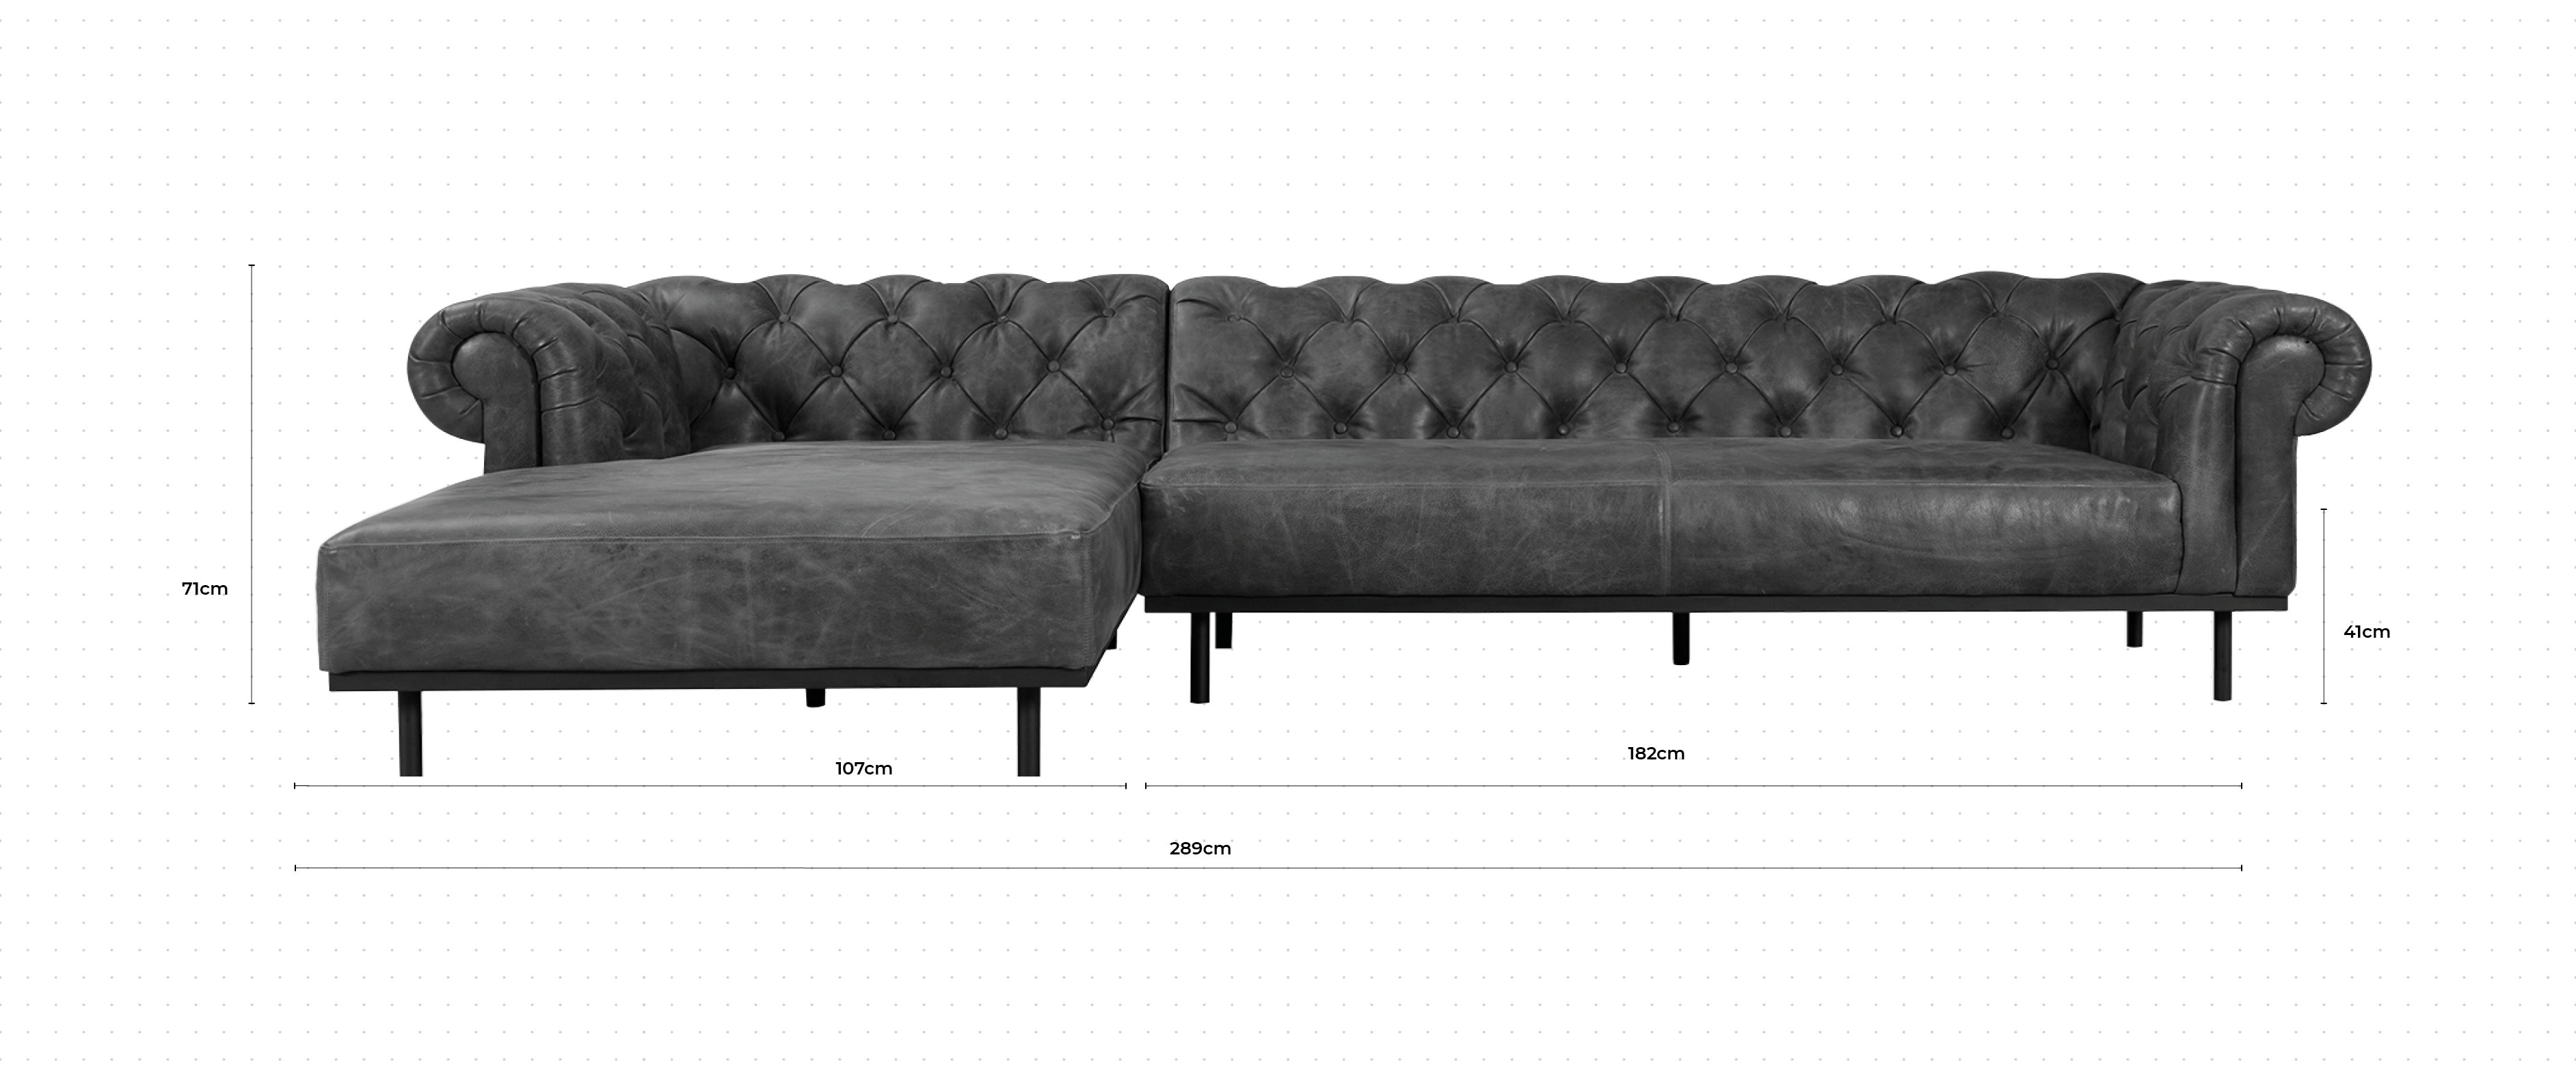 Parfait Large Chaise Sofa LHF dimensions